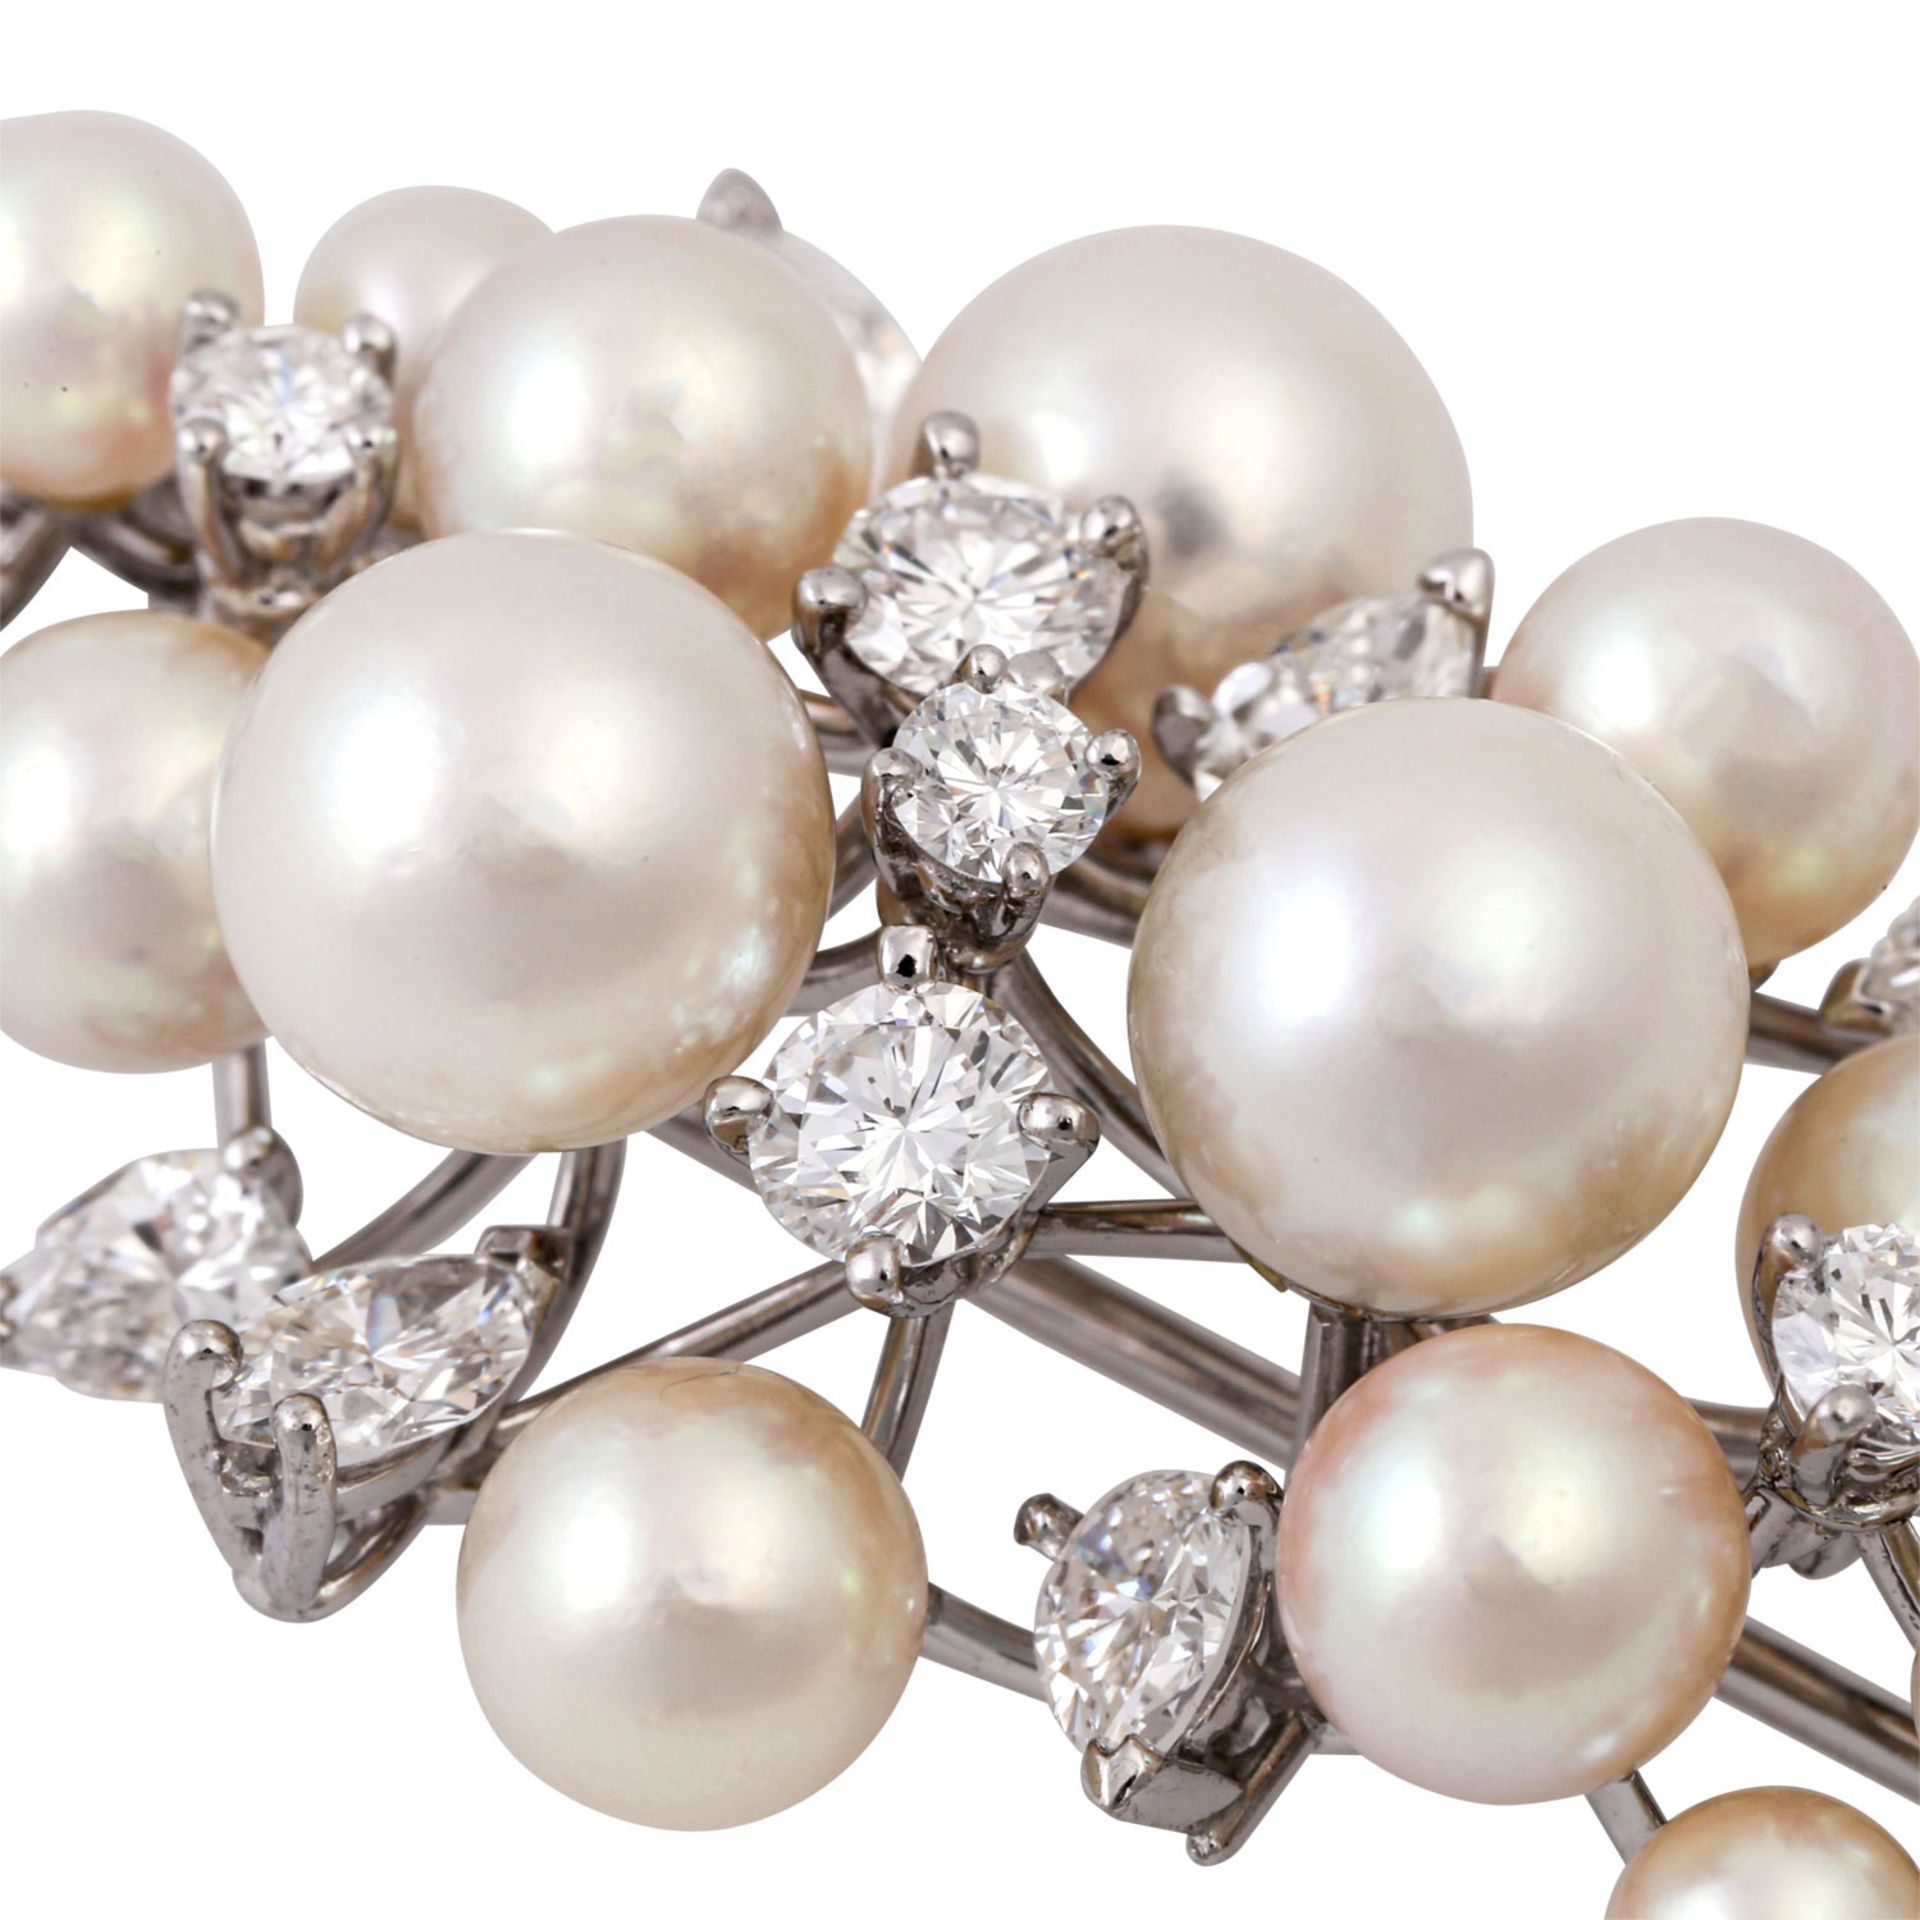 MEISTER Brosche mit Perlen und Diamanten von zus. ca. 2,1 ct, gute-mittl. Farbe und Re - Bild 5 aus 5